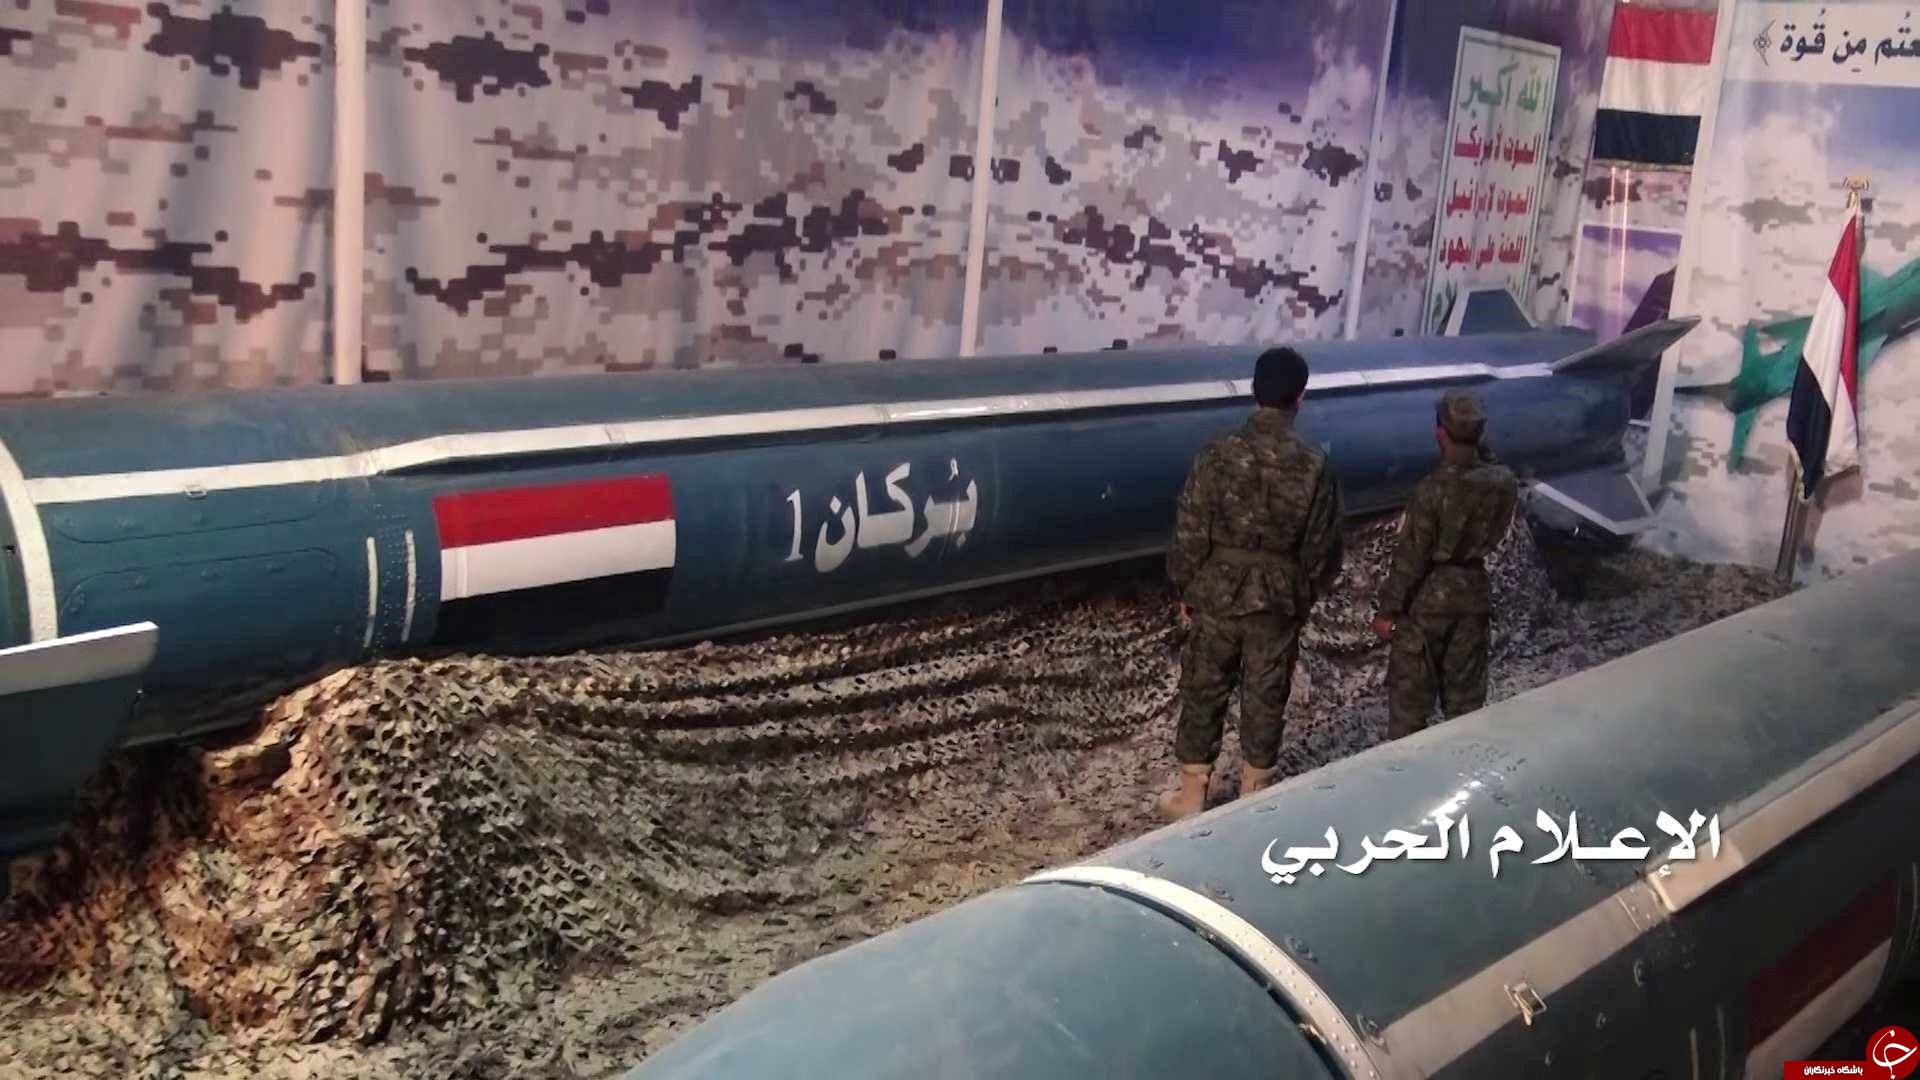 الجيش اليمني يفرض معادلة رعب جديدة، و يؤكد قدرته على استهداف جميع دول العدوان بصواريخ استراتيجية